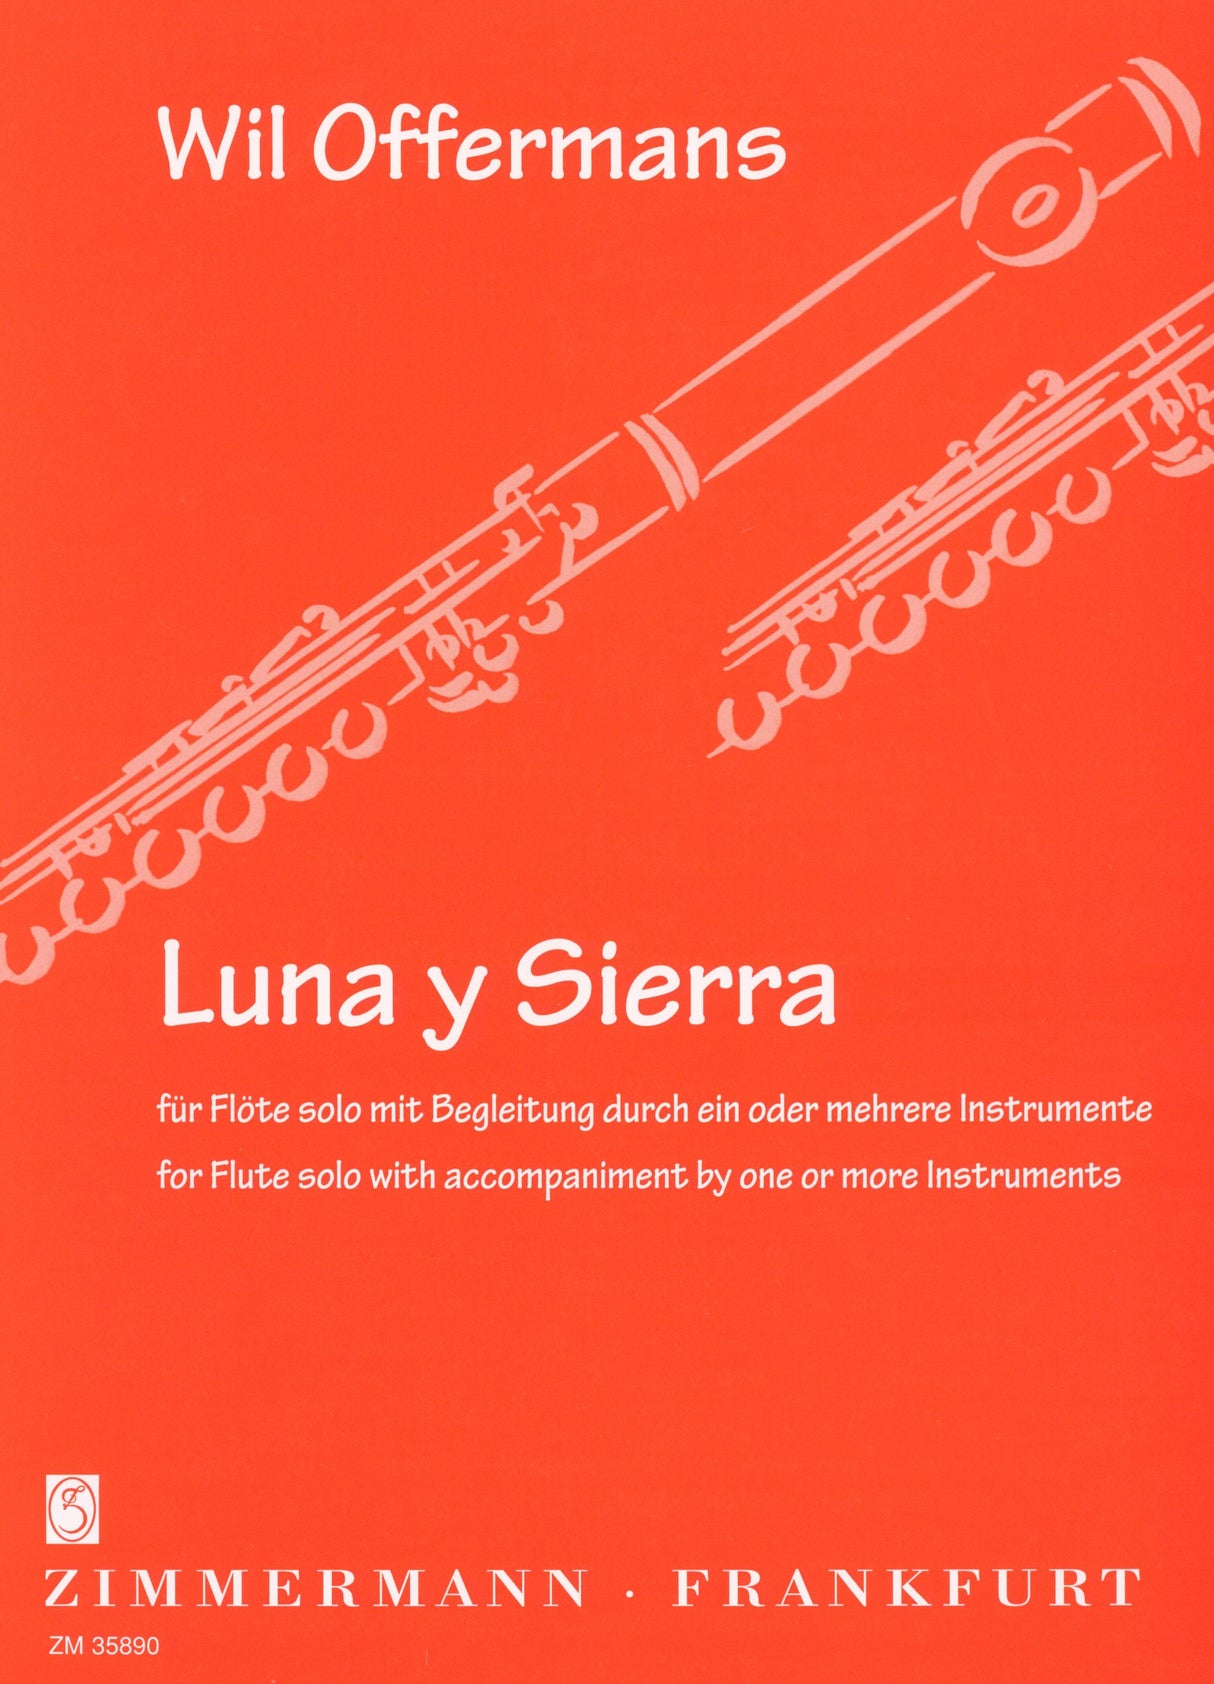 Offermans: Luna y Sierra